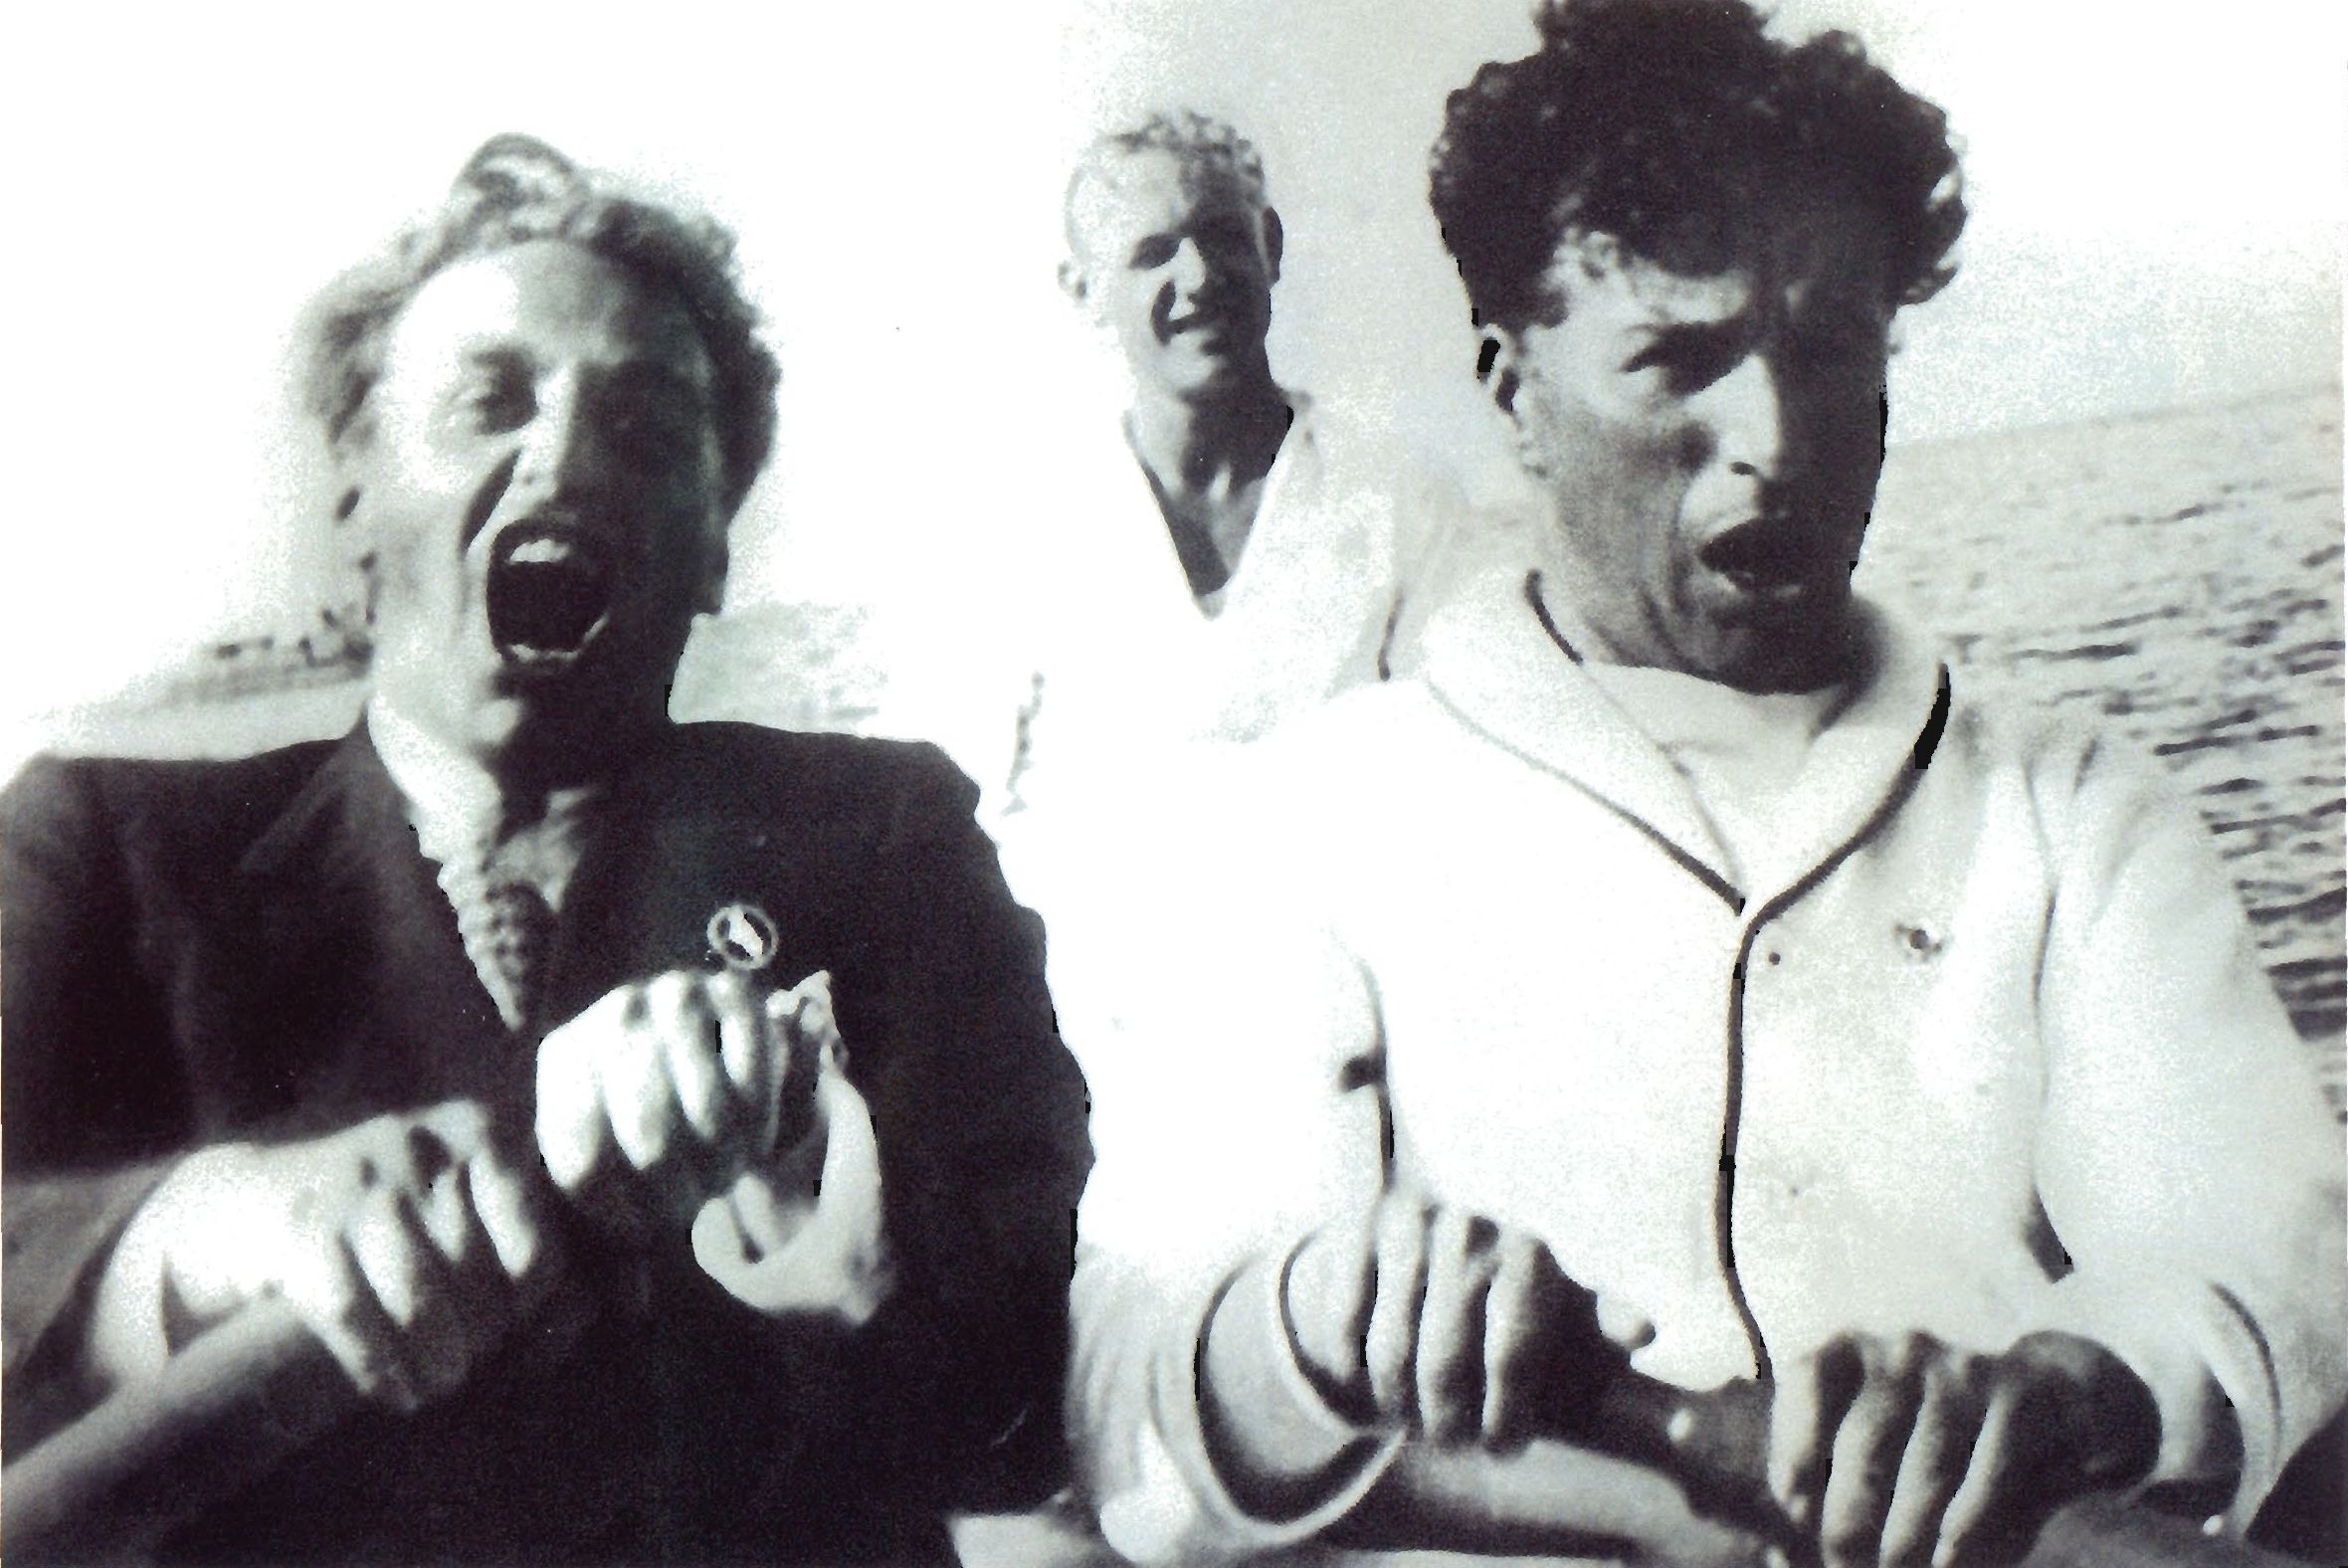 Г. Александров и Ч. Чаплин поют дуэтом песню «Волга-Волга». Голливуд, начало 30-х годов